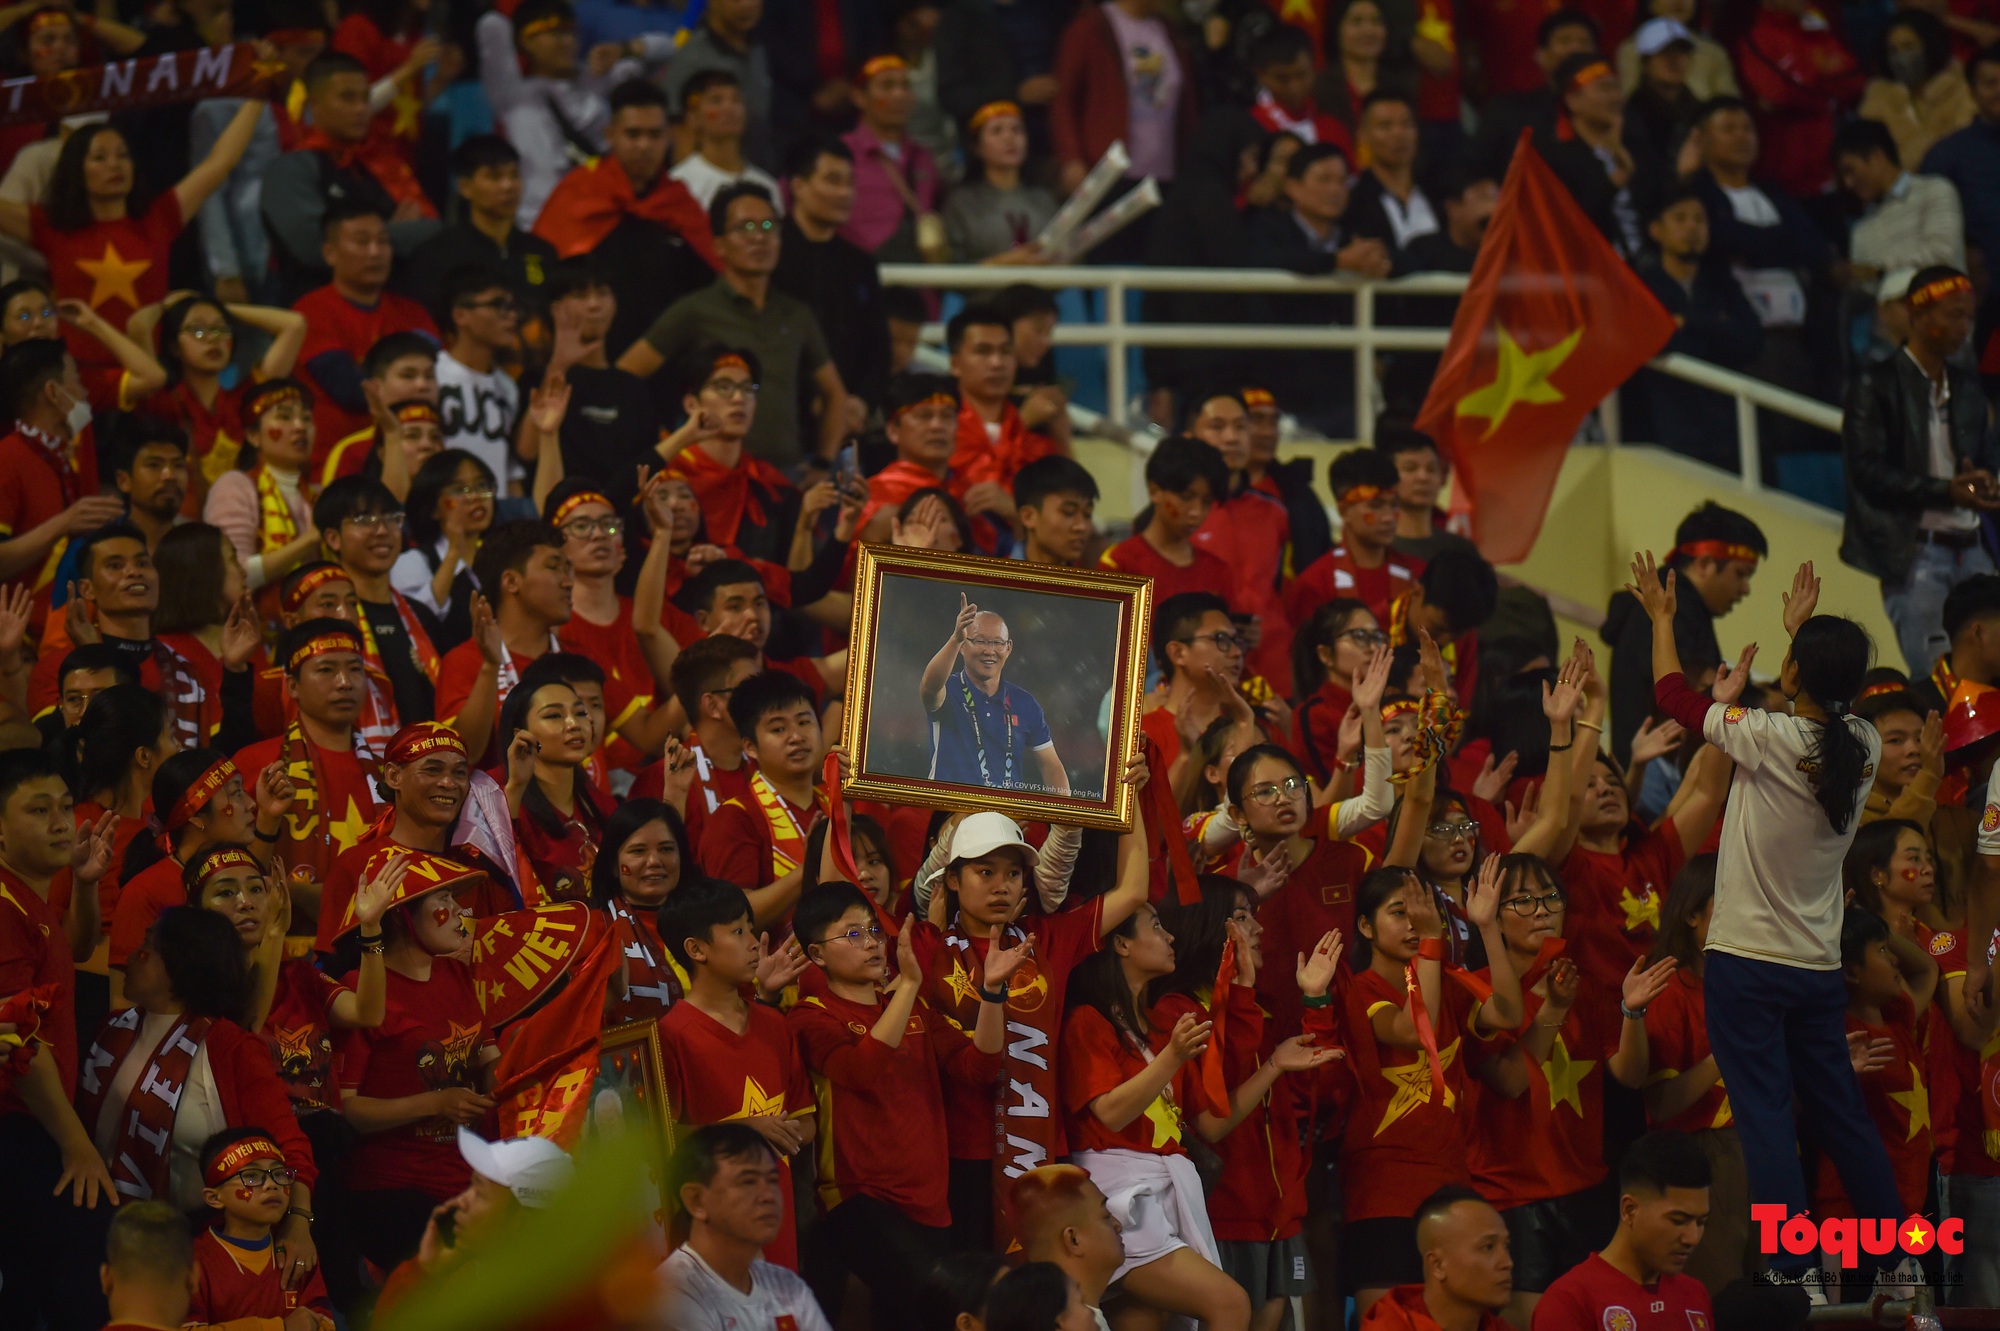 Chùm ảnh Bán kết AFF Cup 2022: Niềm vui chiến thắng của cầu thủ, cổ động viên Việt Nam trên sân Mỹ Đình - Ảnh 3.